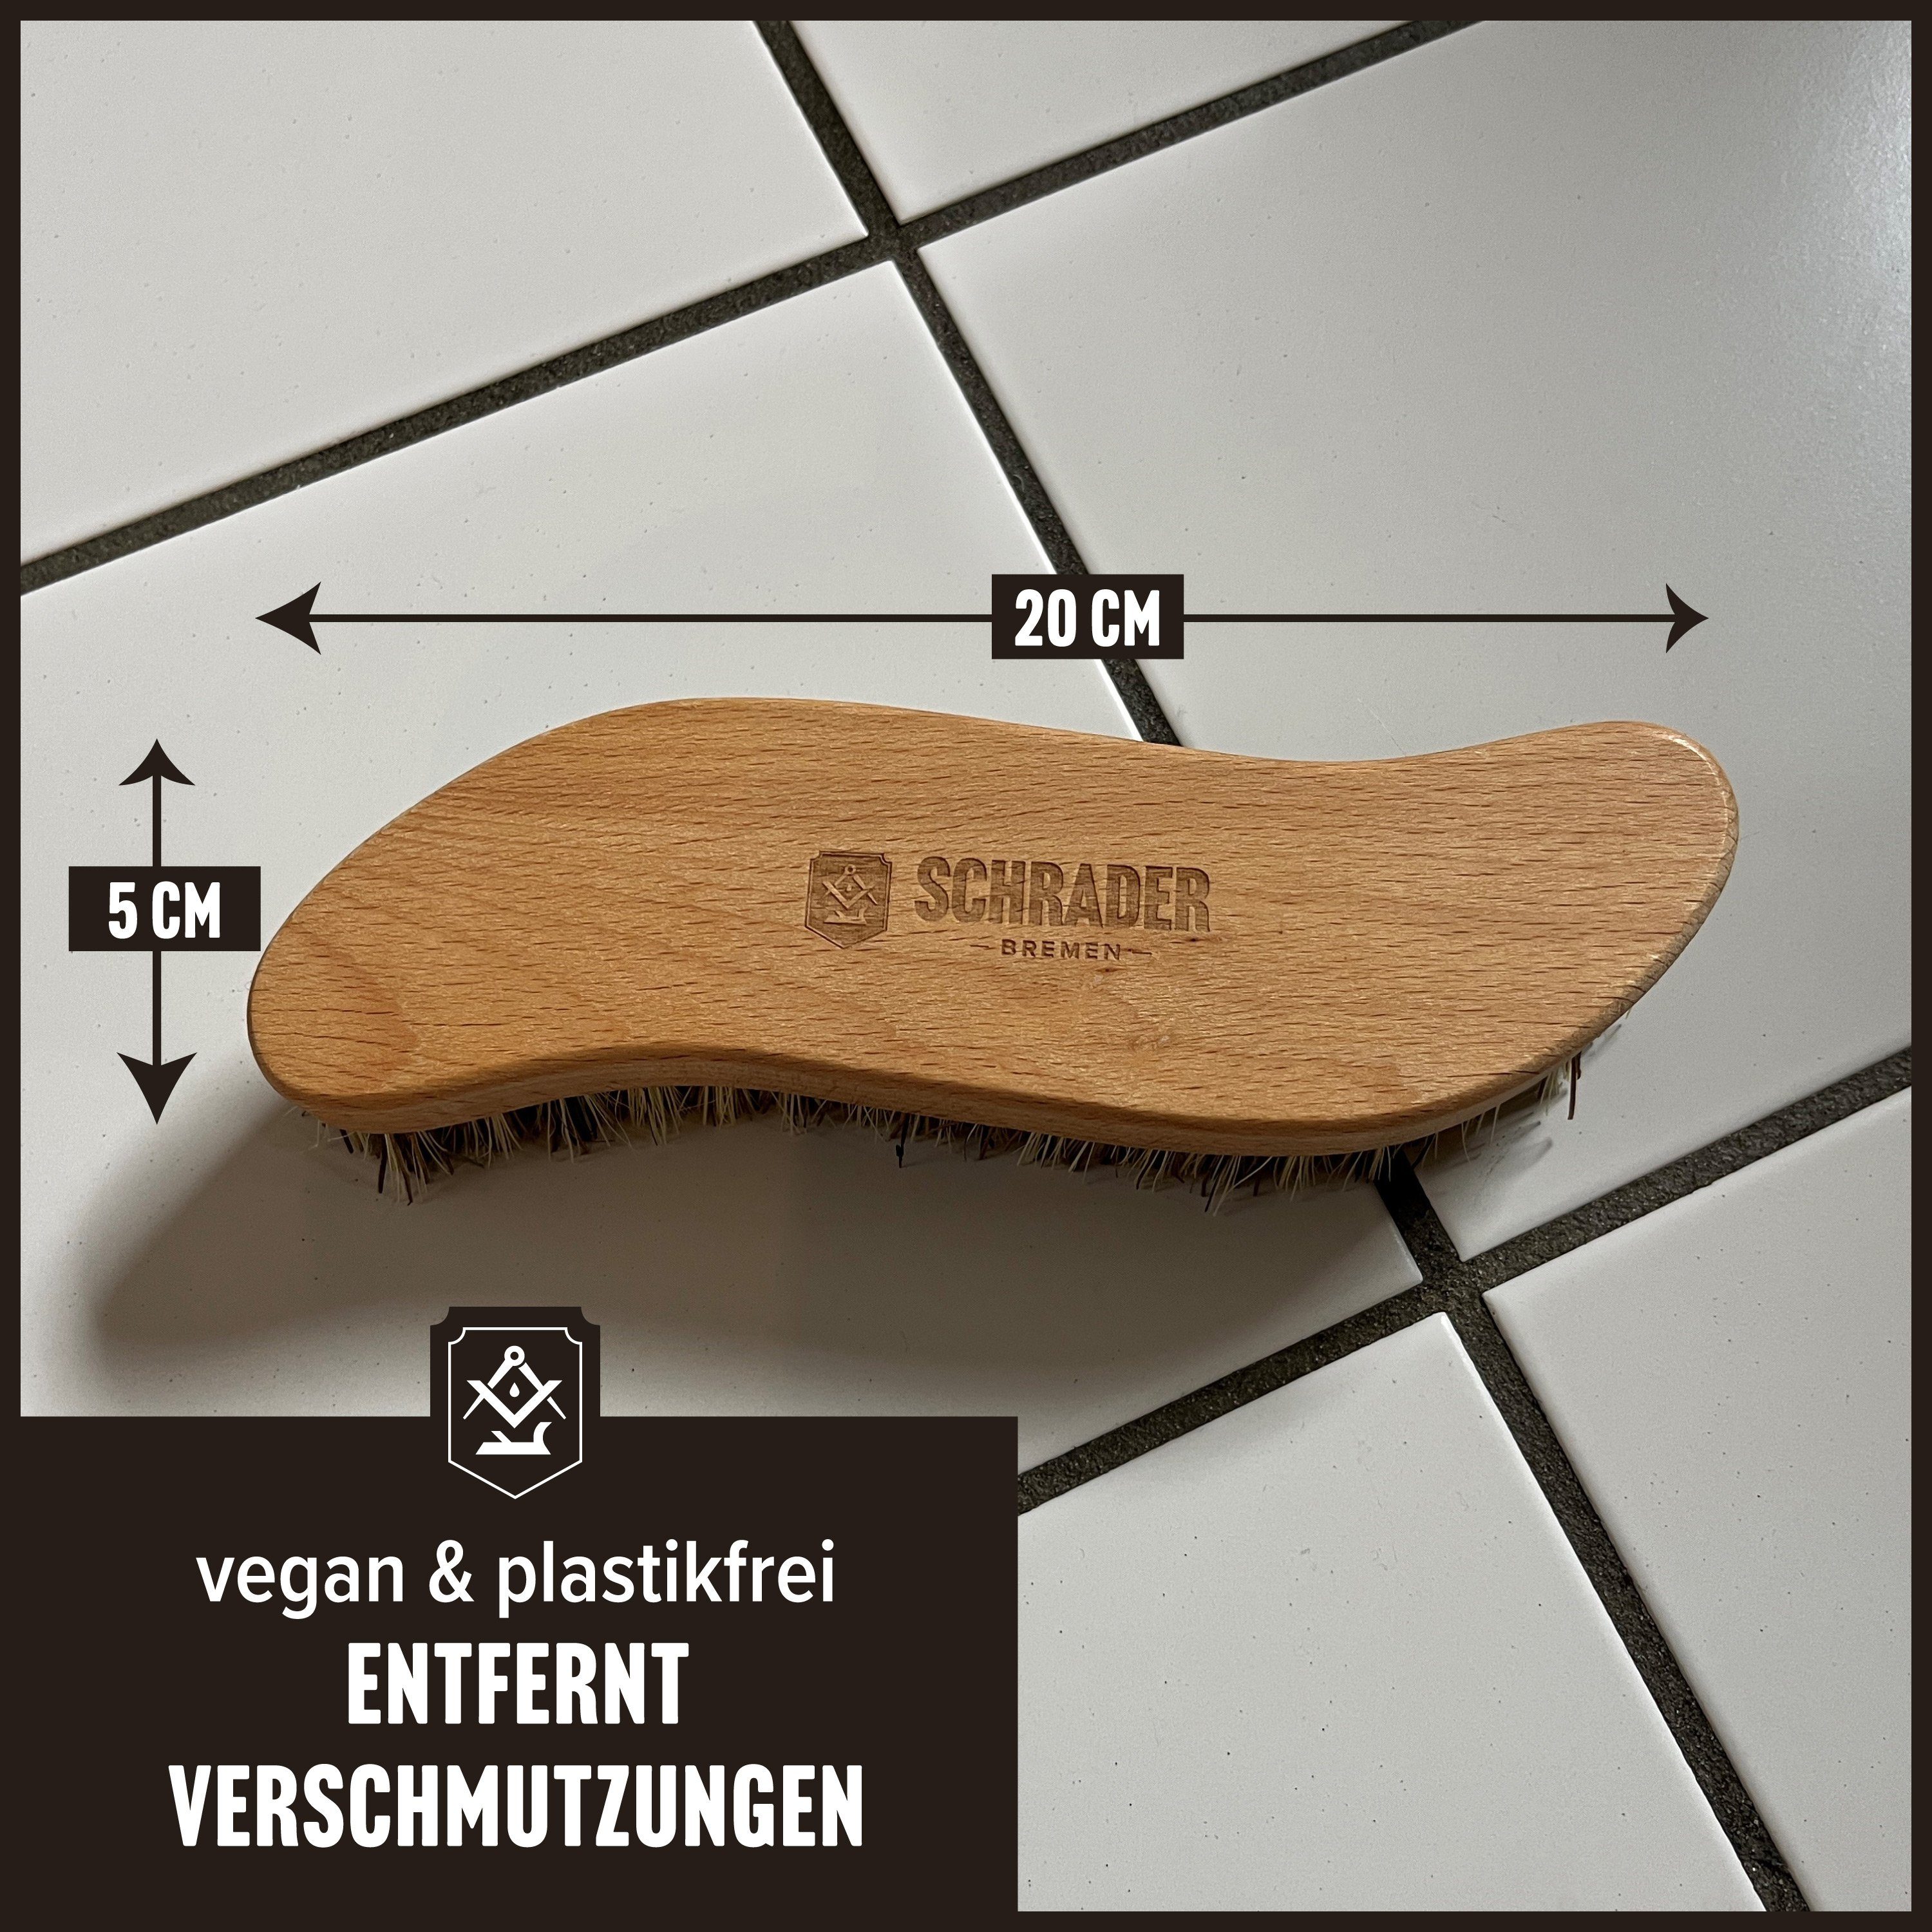 und vegane Fliesen - Schmutzbürste in von Germany Made Scheuerbürste Reinigung - S1400301, Reinigungsbürste Holz, zur -, Schrader Leder